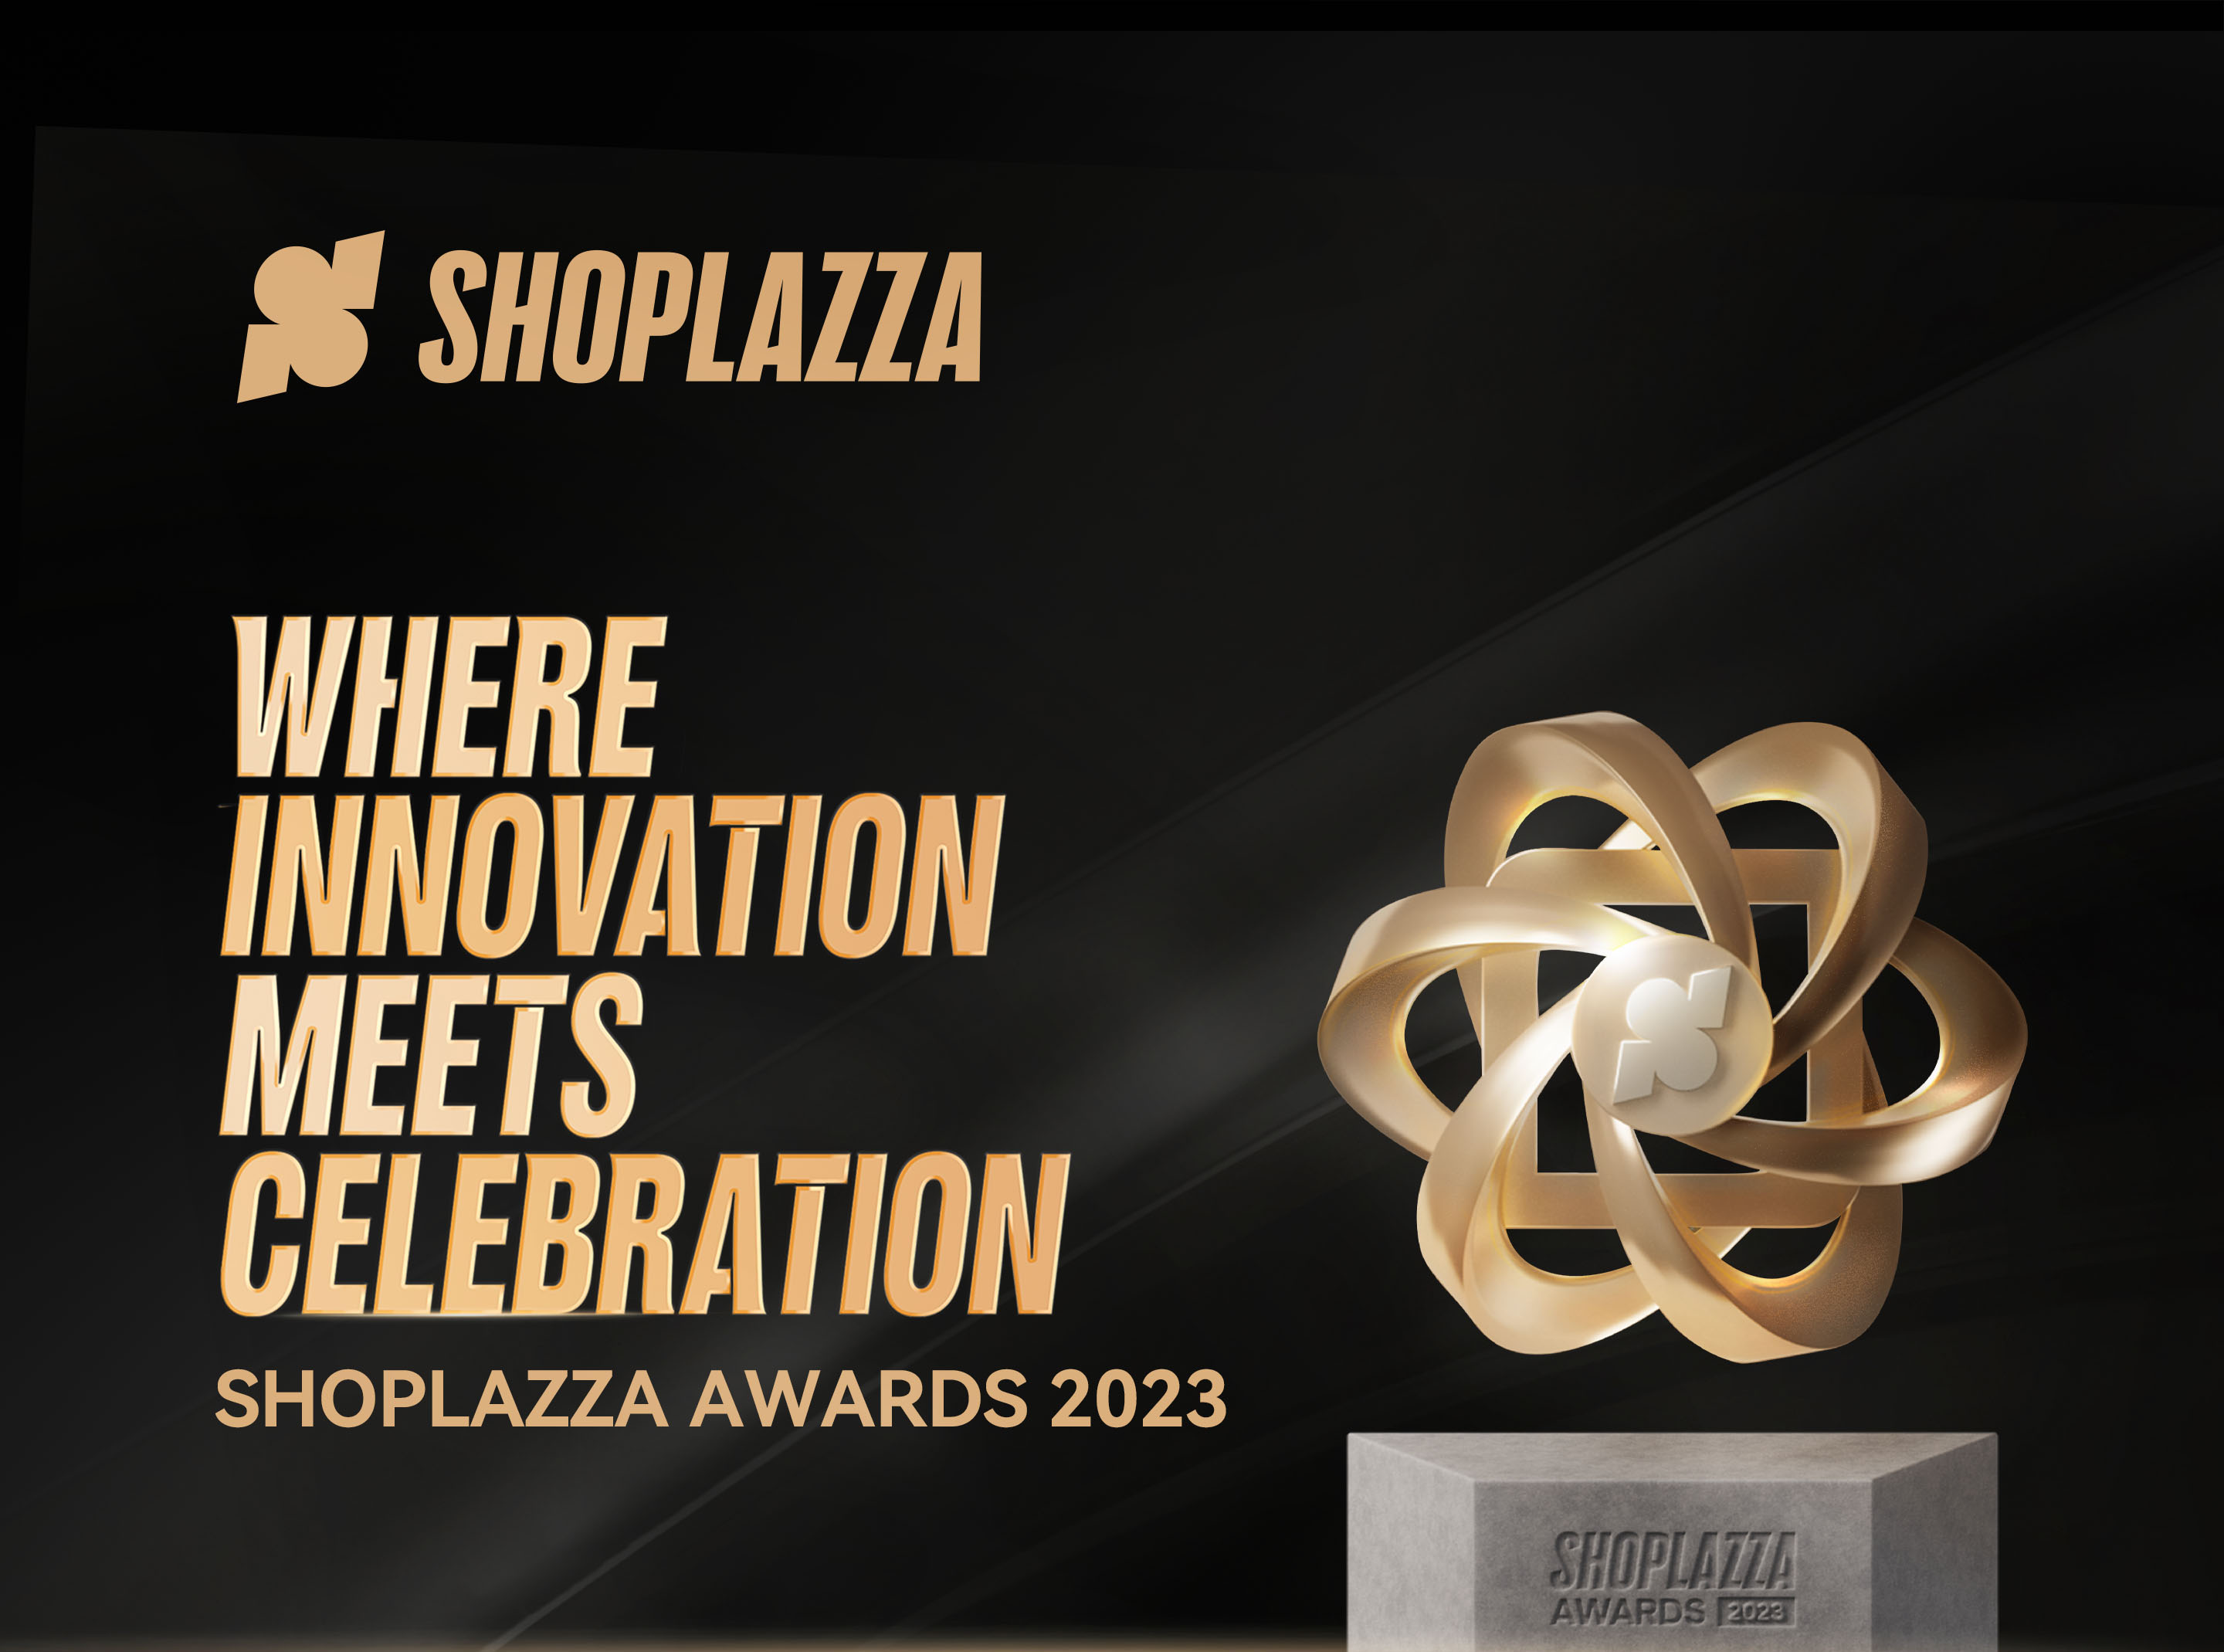 Shoplazza Awards 2023: Where innovation meets celebration